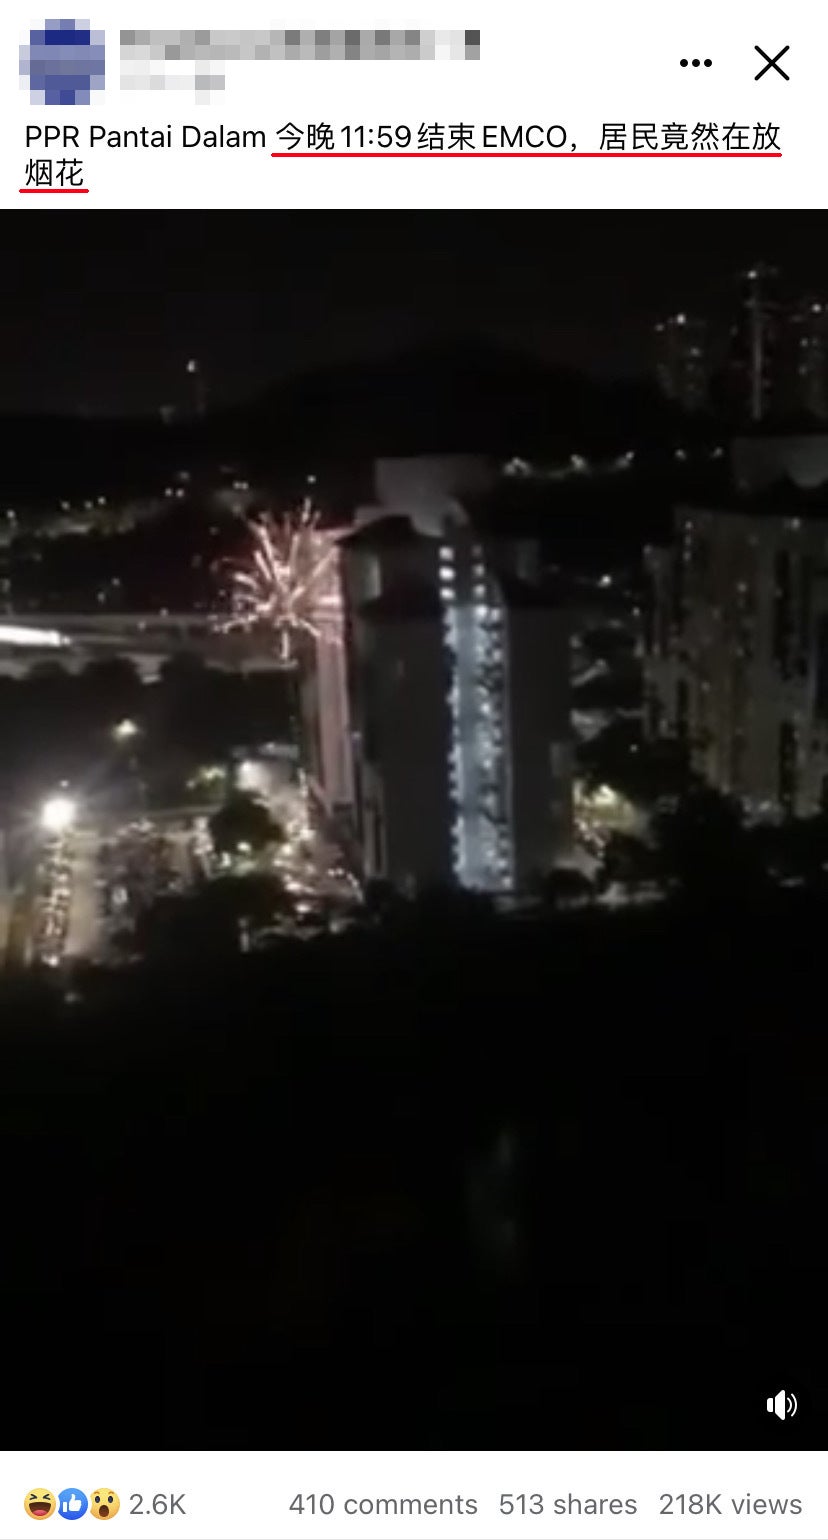 PPR Pantai dalam end EMCO fireworks